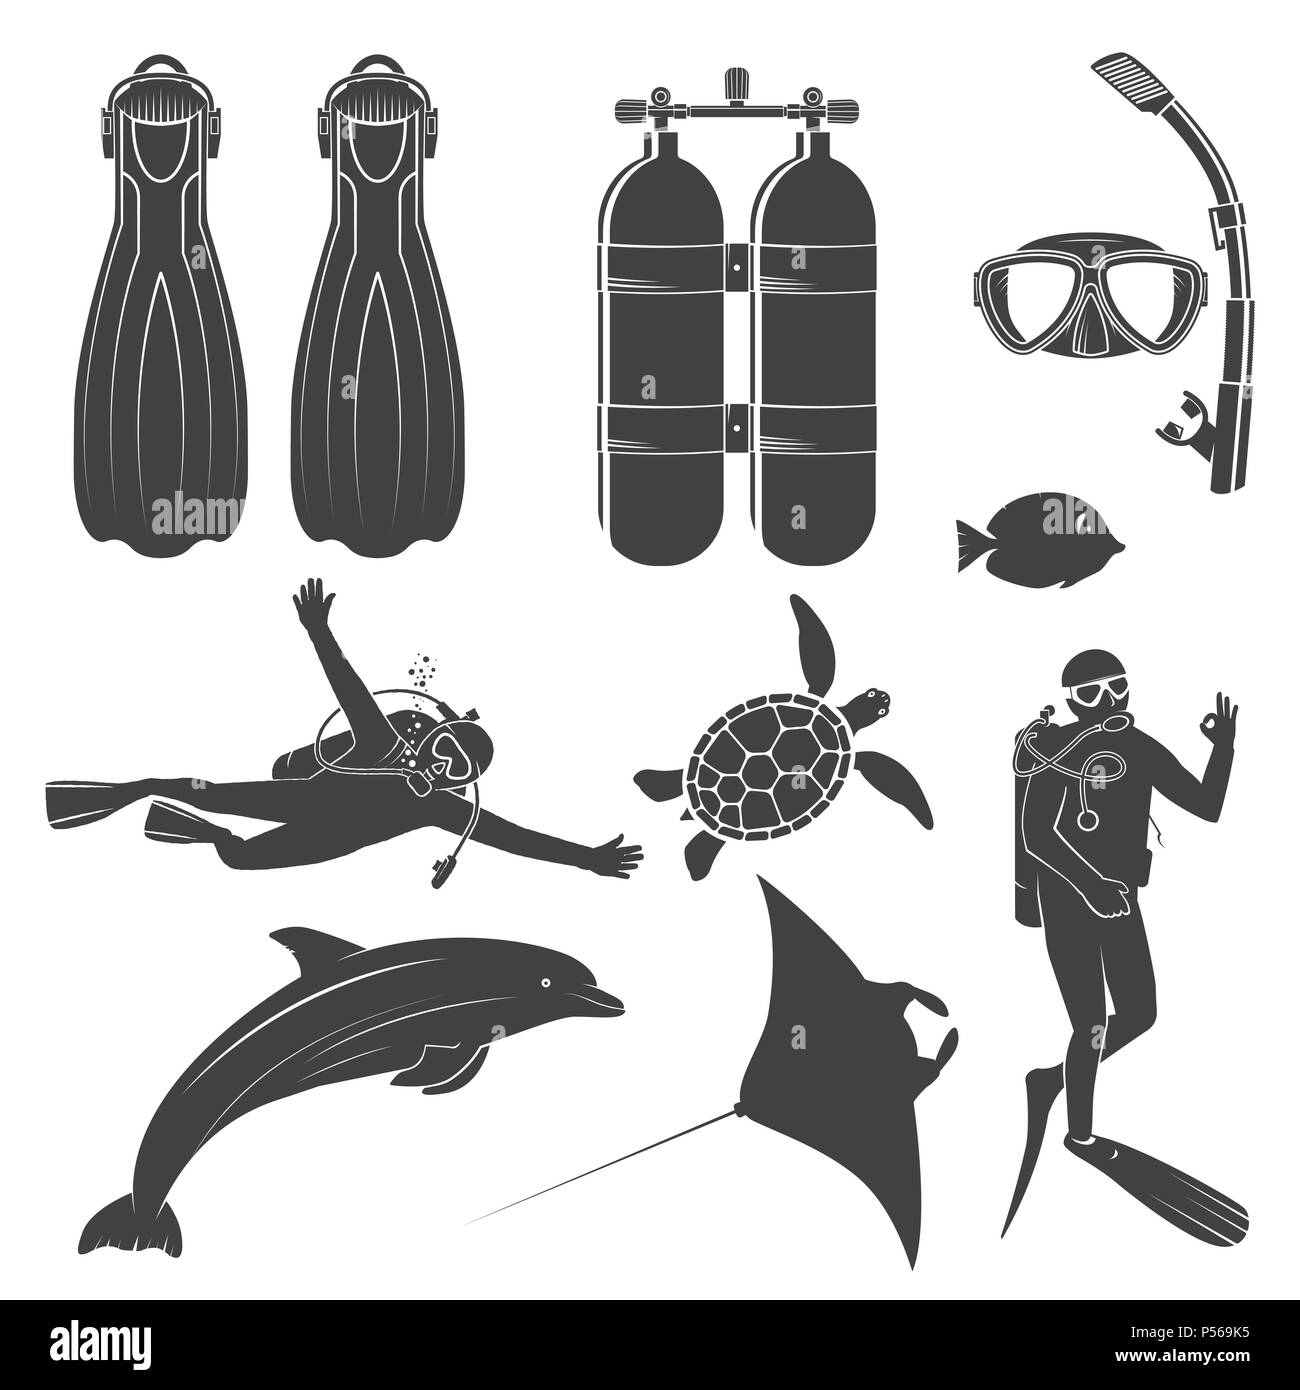 Scuba diving Gear und Taucher. Vector Illustration. Set gehören Tauchen Maske, Schnorchel, Flossen, Taucher und Meerestiere. Elemente auf das Thema der Tauchen s Stock Vektor